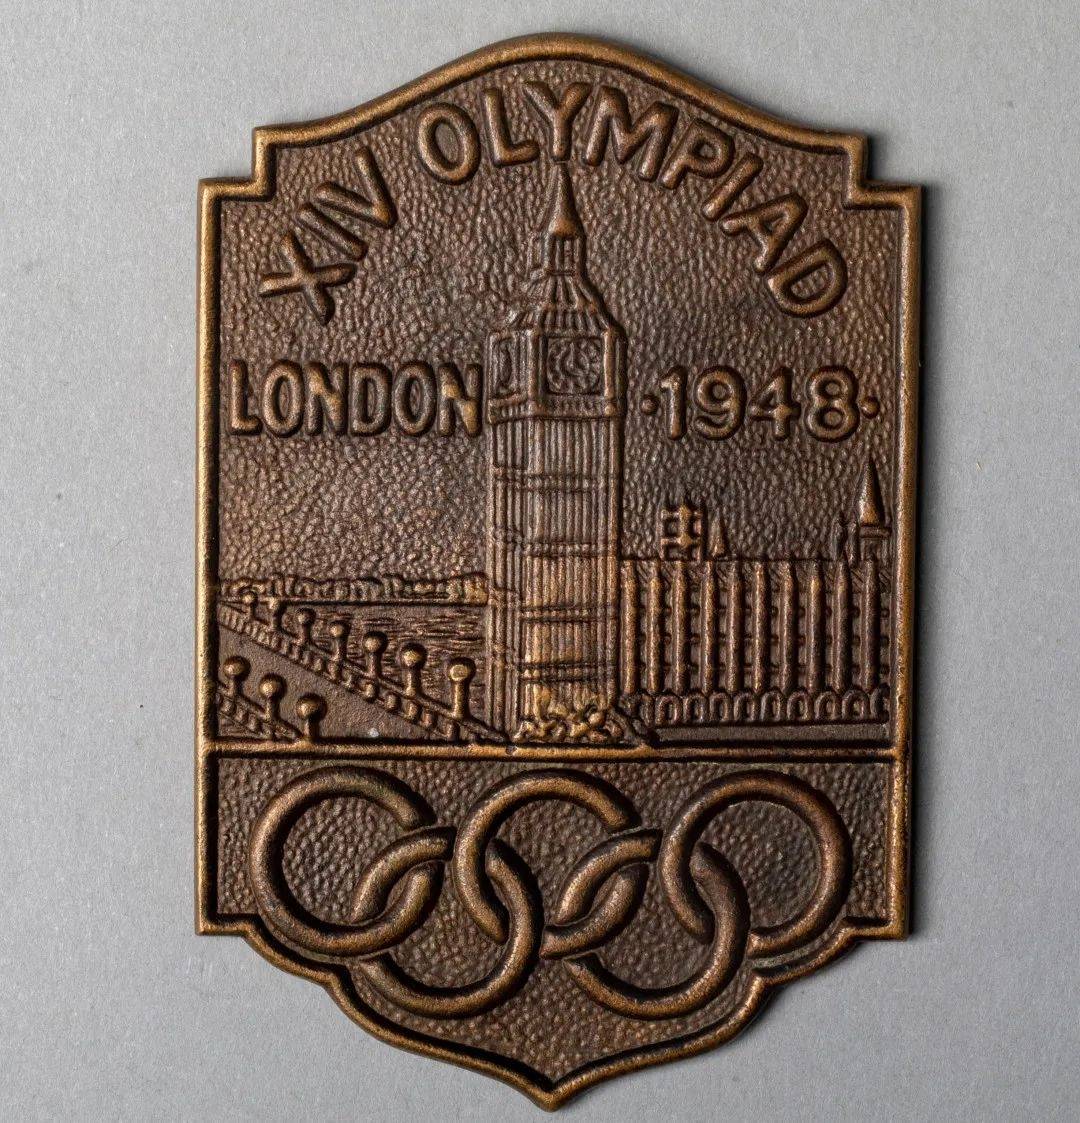 听藏品讲故事为何1948年的伦敦奥运会和平愿望如此强烈